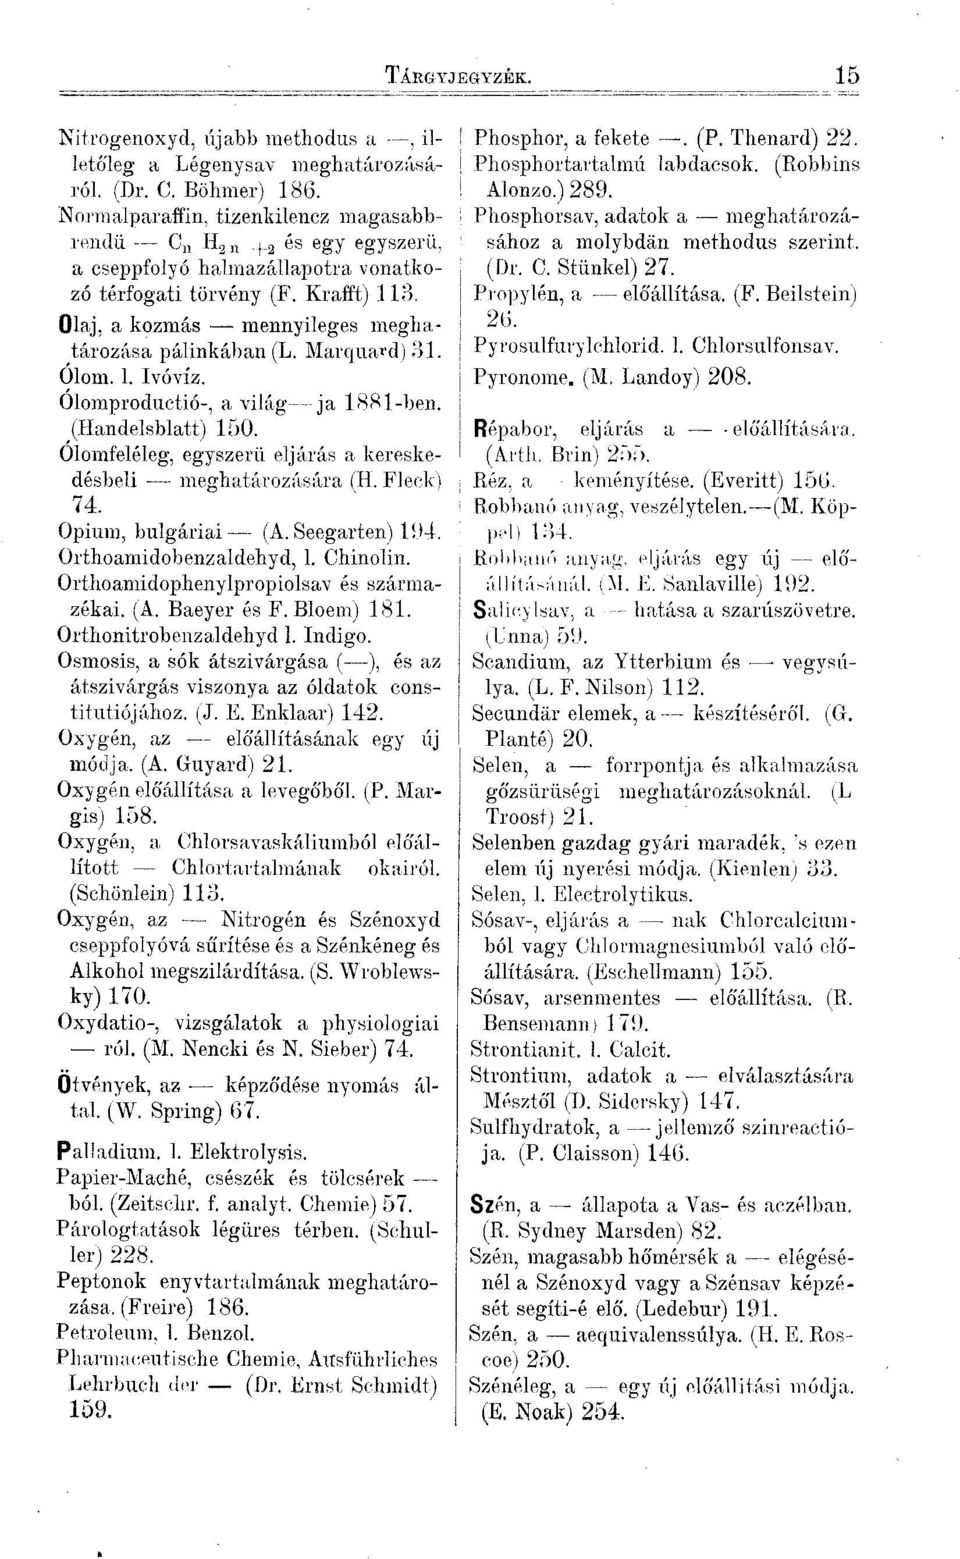 Marquard) 31. Ólom. l. Ivóvíz. Ólomproductió-, a világ ja 1881-ben. (Handelsblatt) 150. Ólomfeléleg, egyszerű eljárás a kereskedésbeli meghatározására (H. Fleck) 74. Opium, bulgáriai (A.